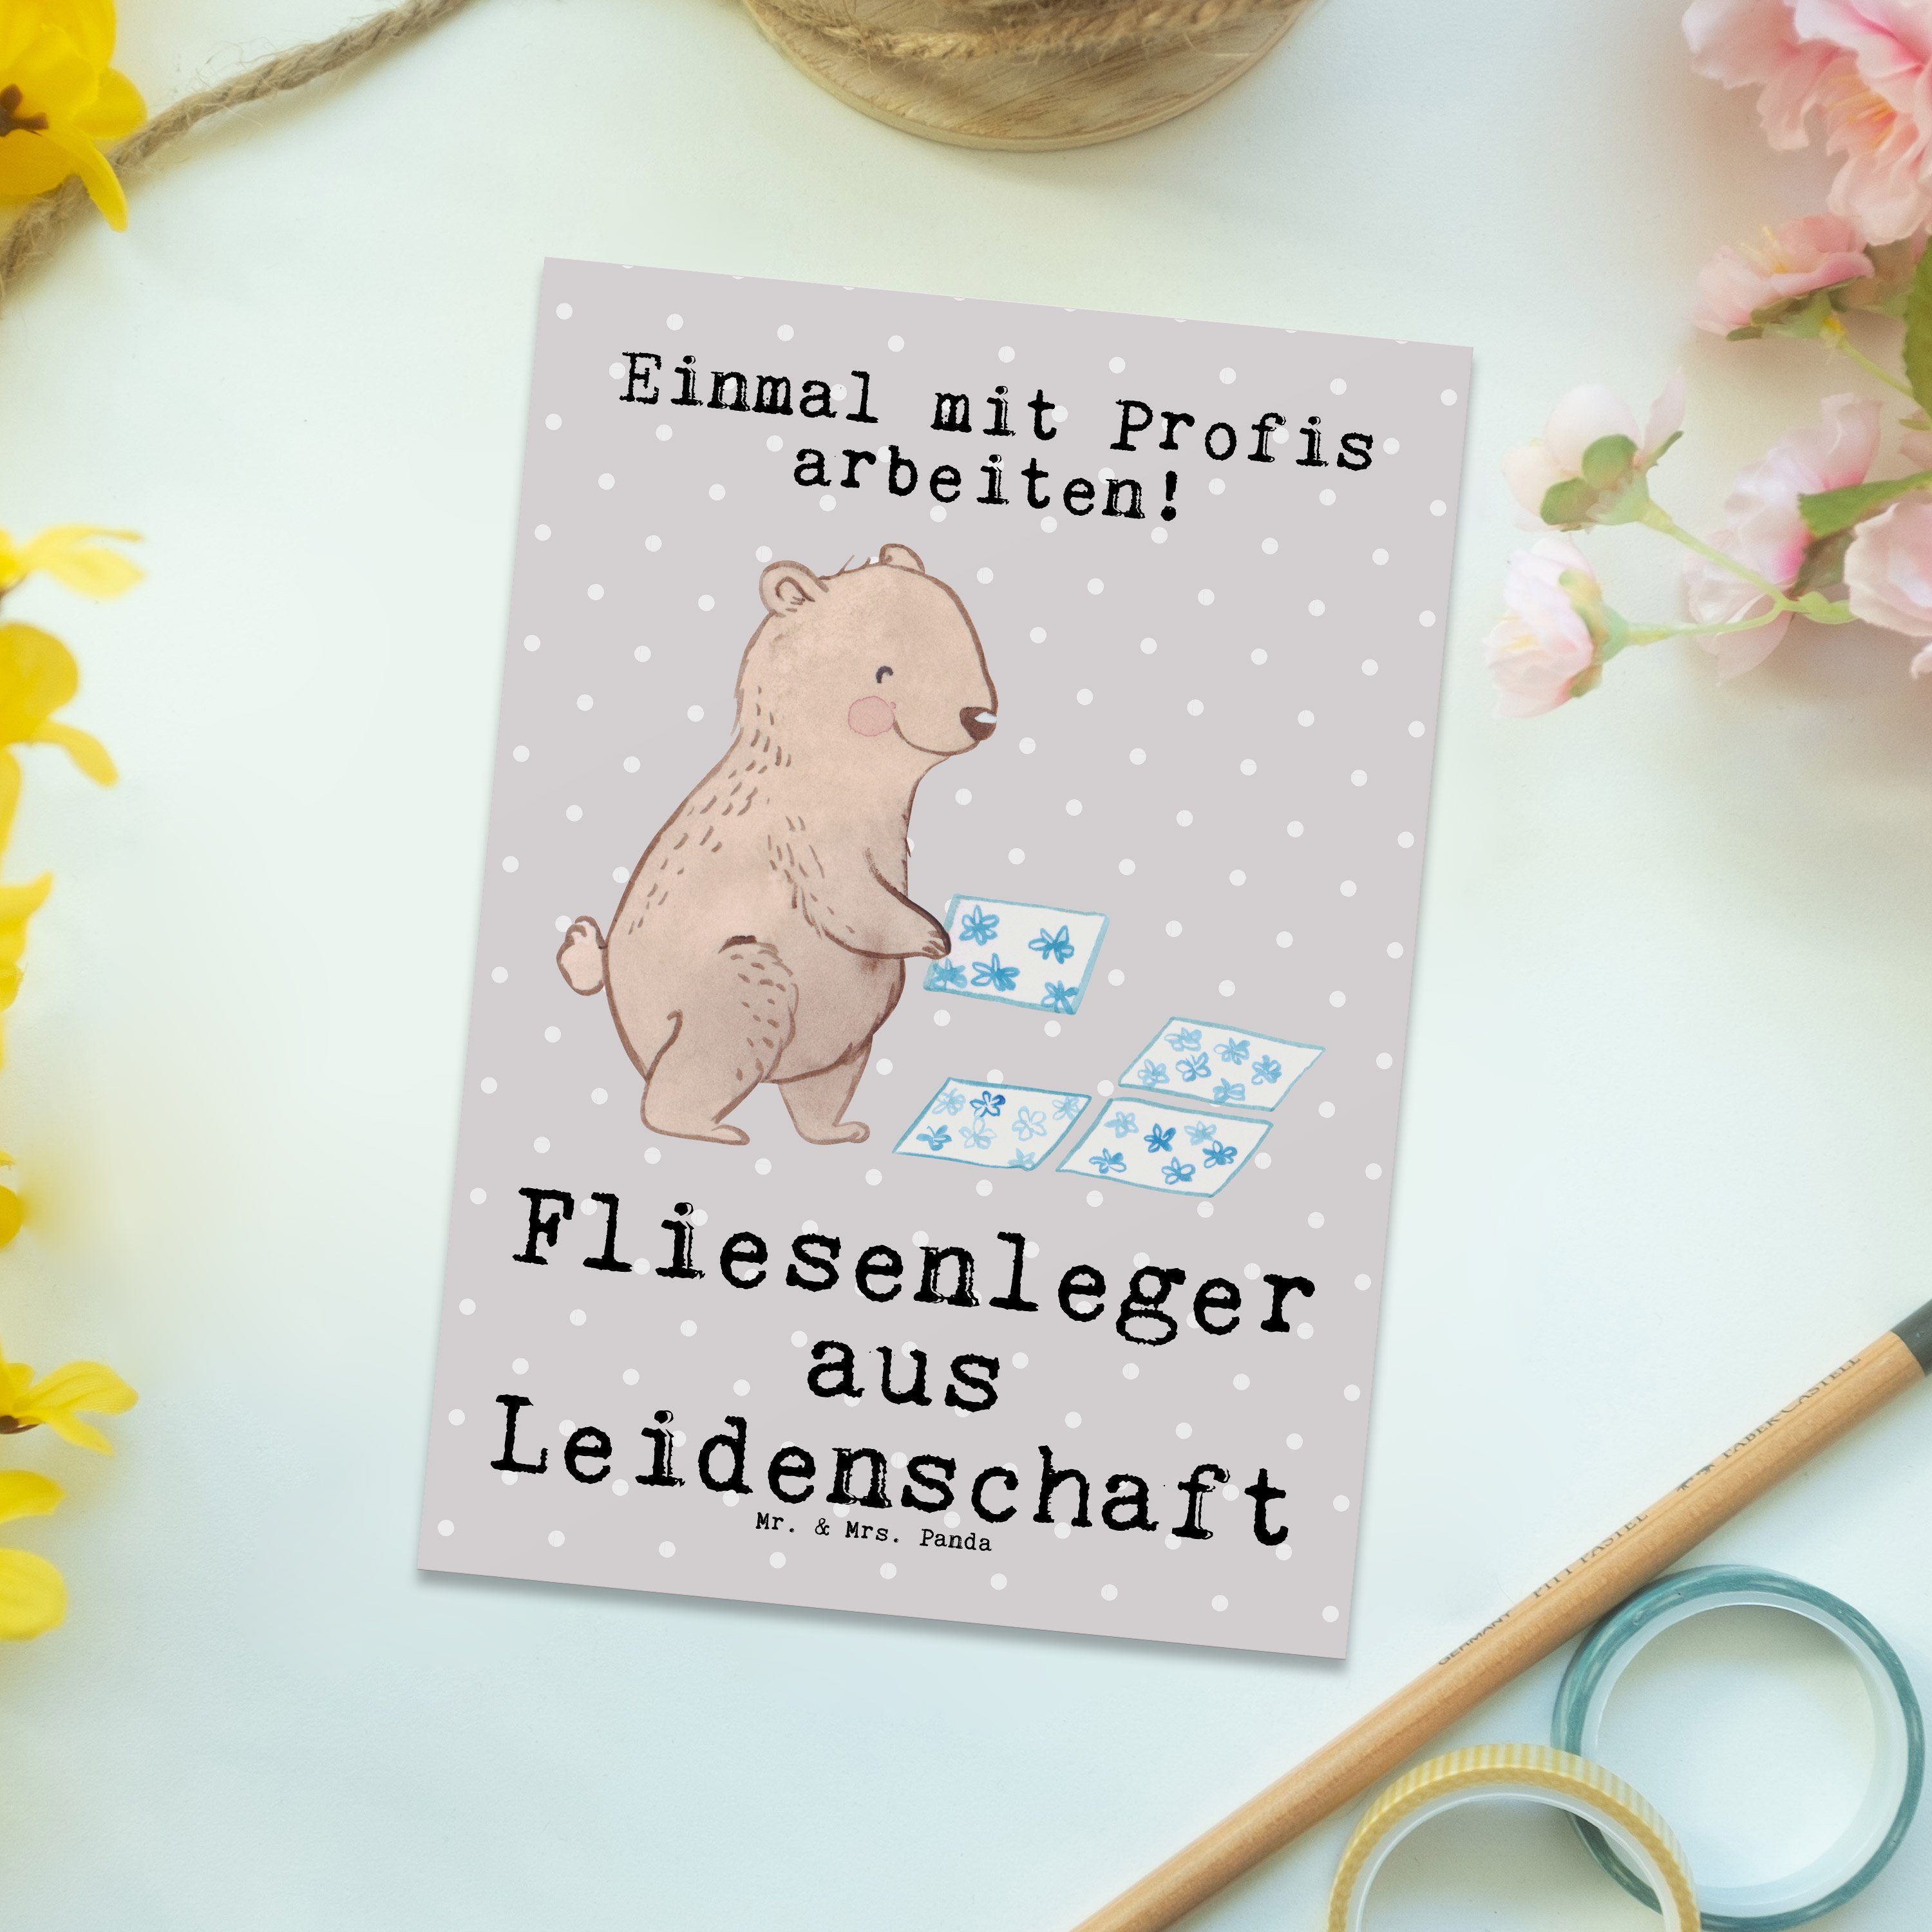 Mr. & Mrs. Panda Postkarte Fliesenleger aus Leidenschaft - Grau Pastell - Geschenk, Gesellenprüf